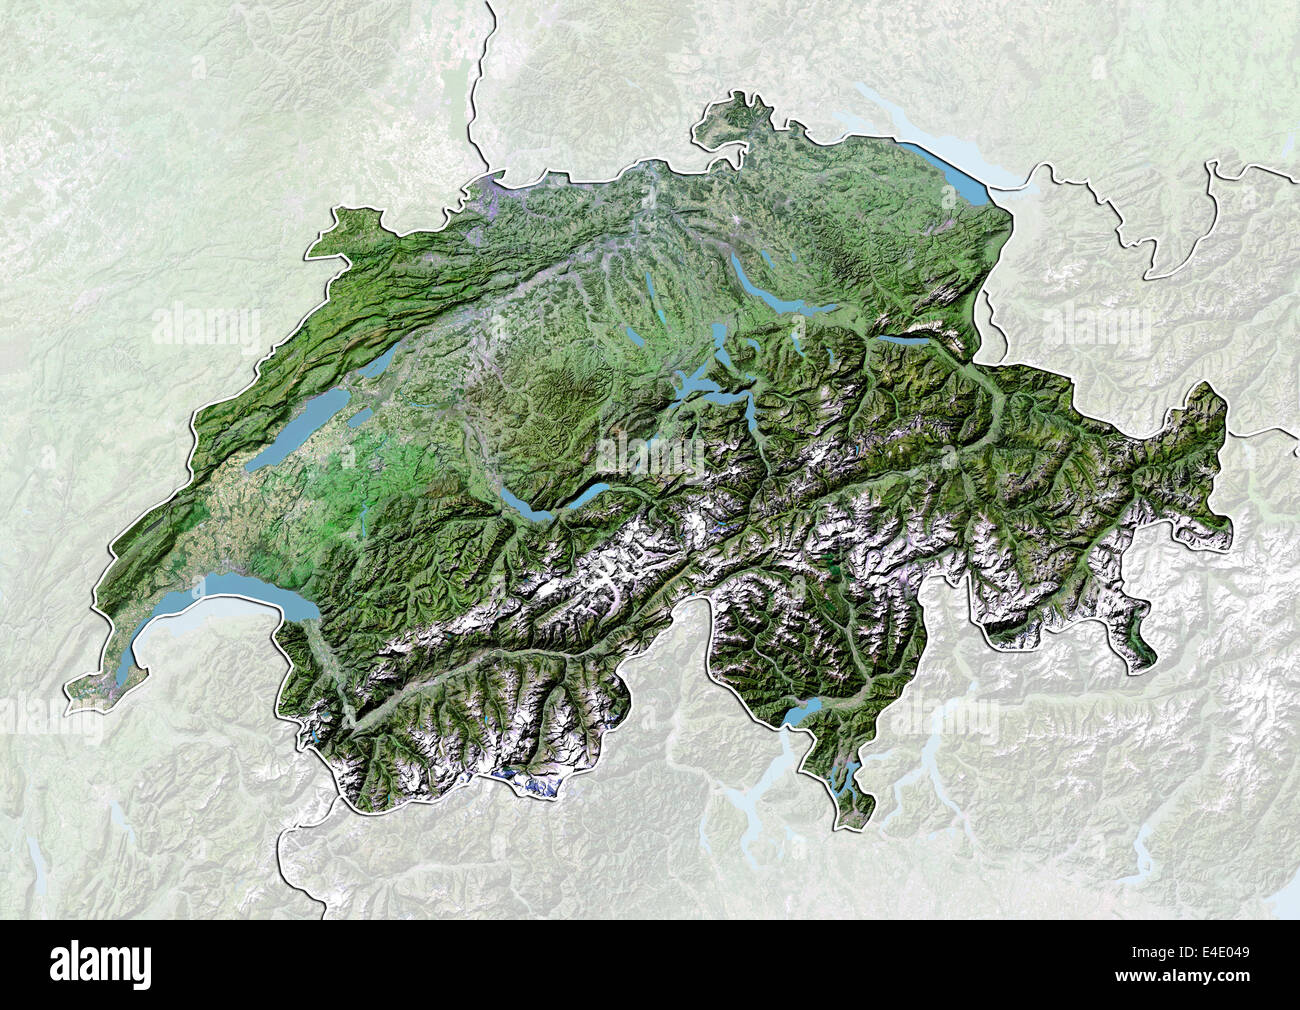 Schweiz, Satellitenbild mit Relief-Effekt, mit Rand und Maske  Stockfotografie - Alamy